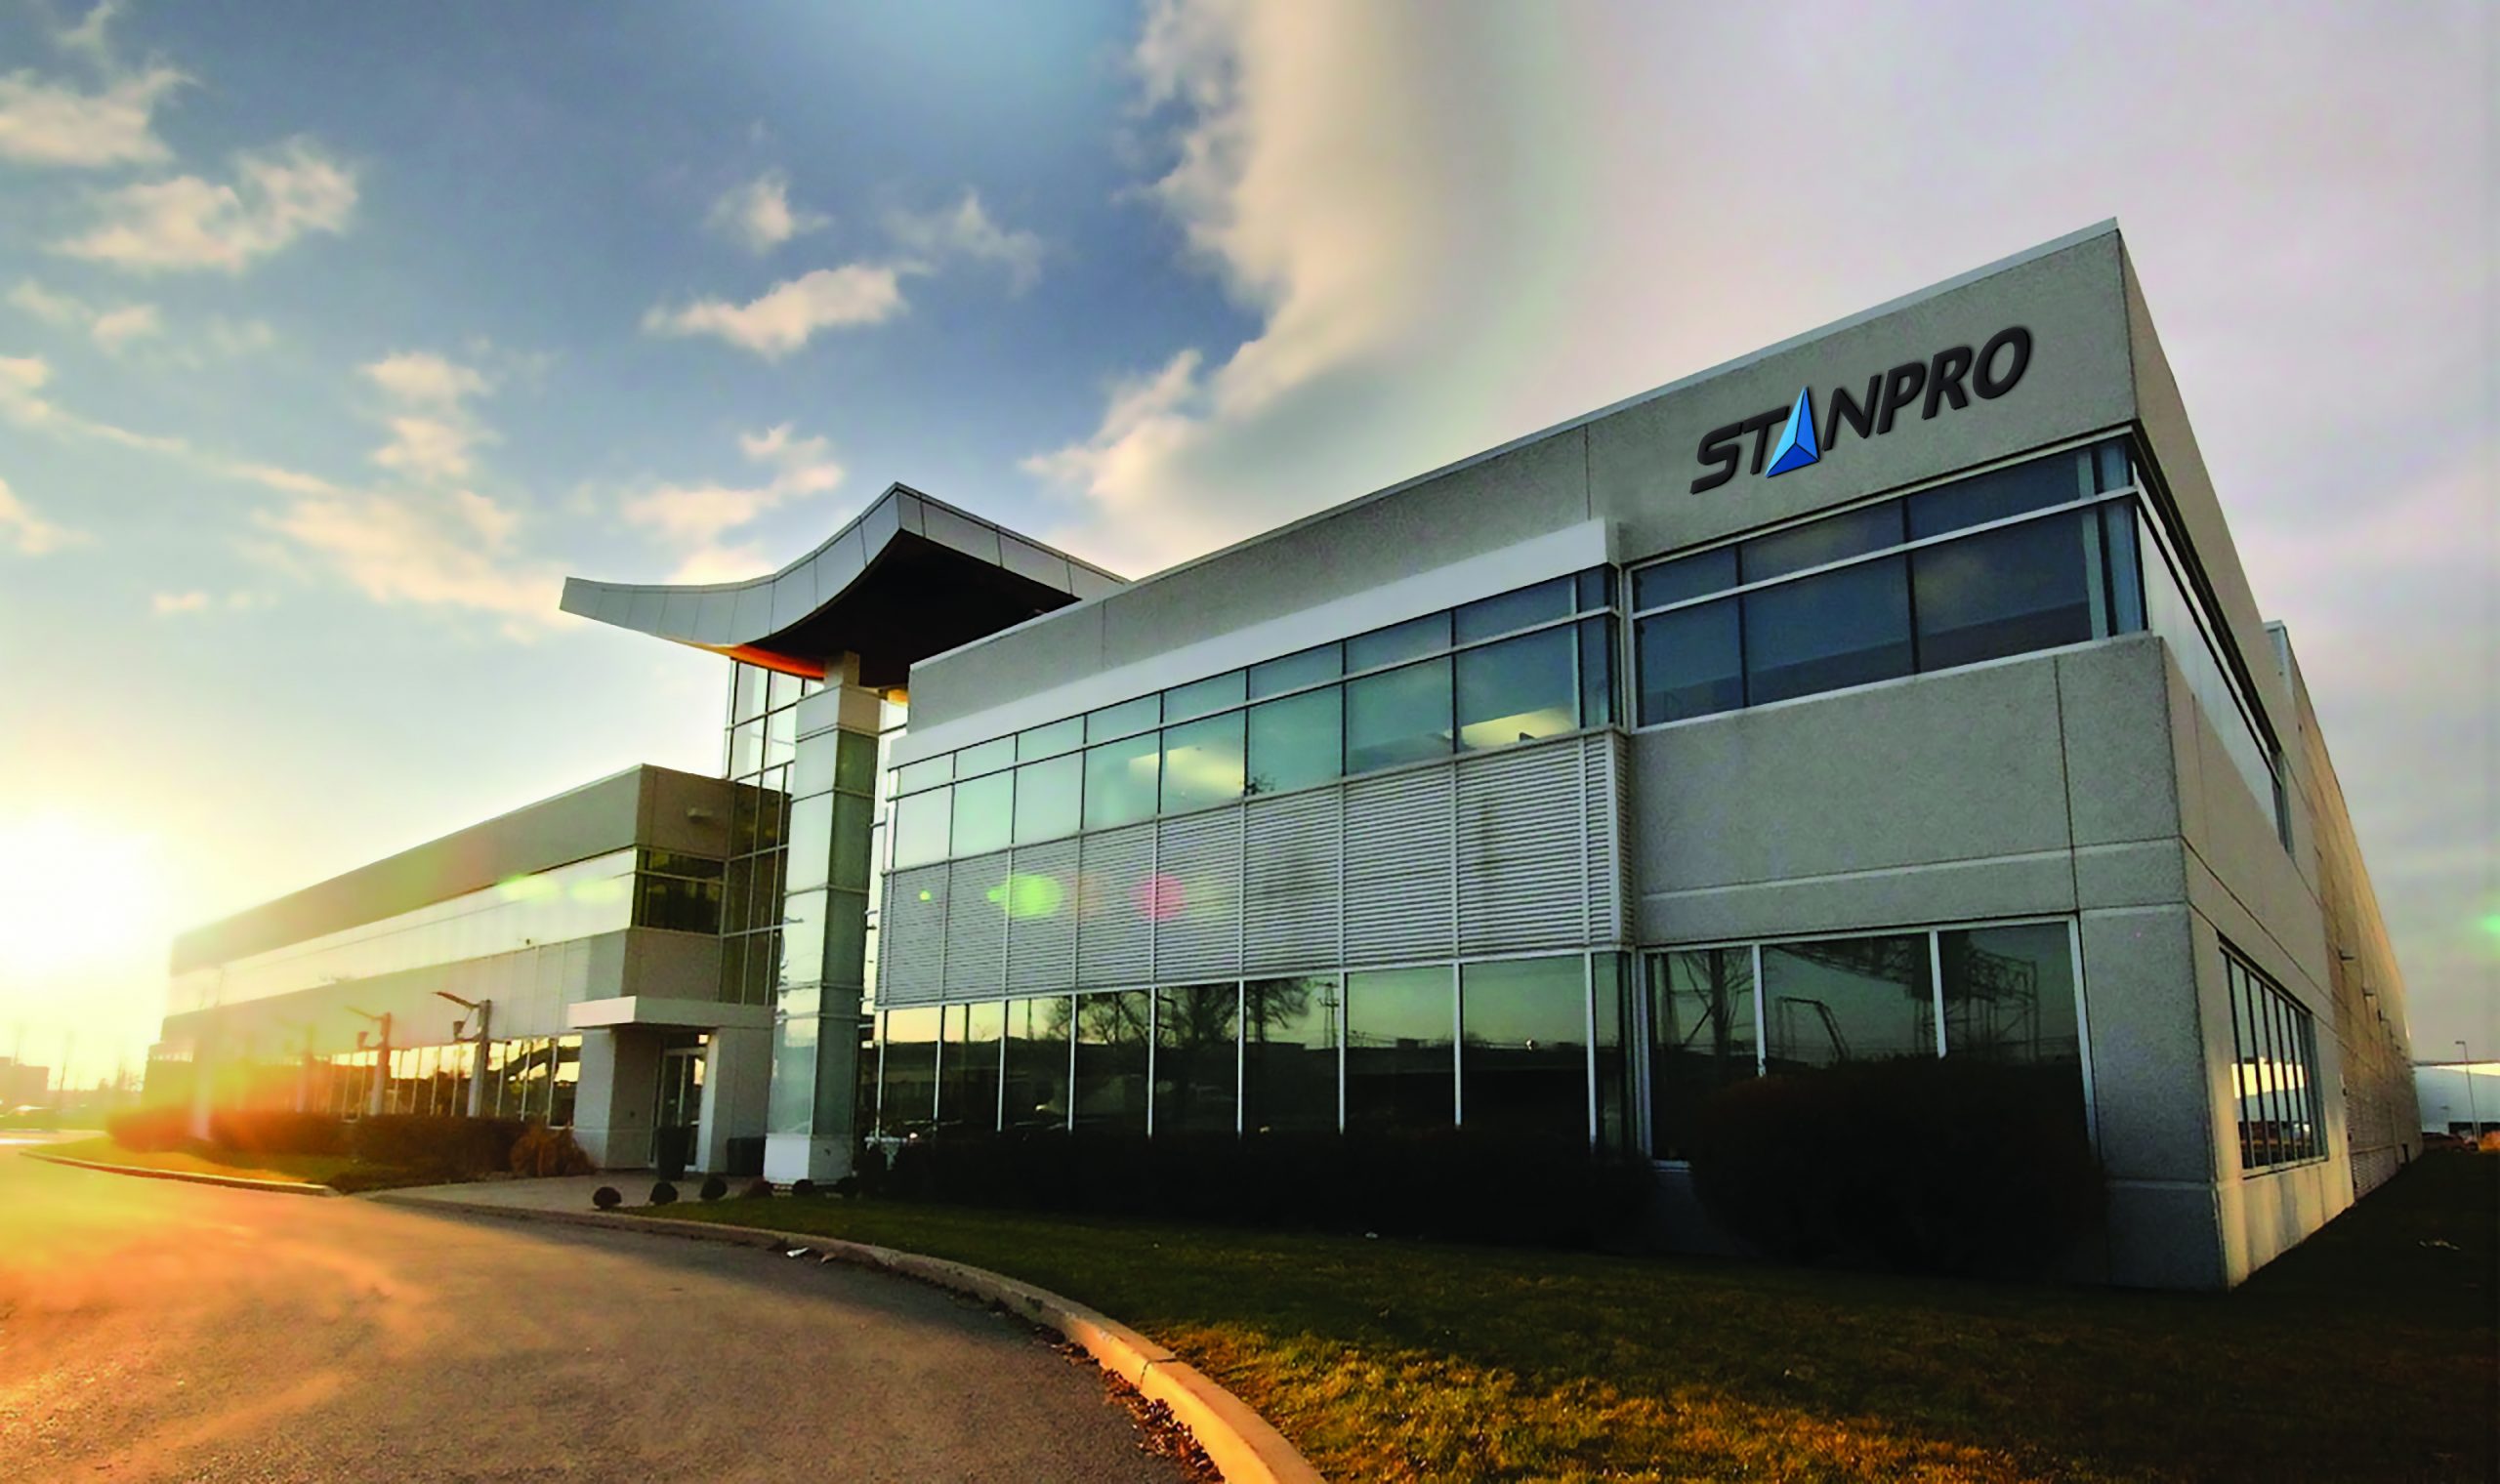 斯坦普罗加拿大照明公司办公楼位于魁北克省蒙特利尔